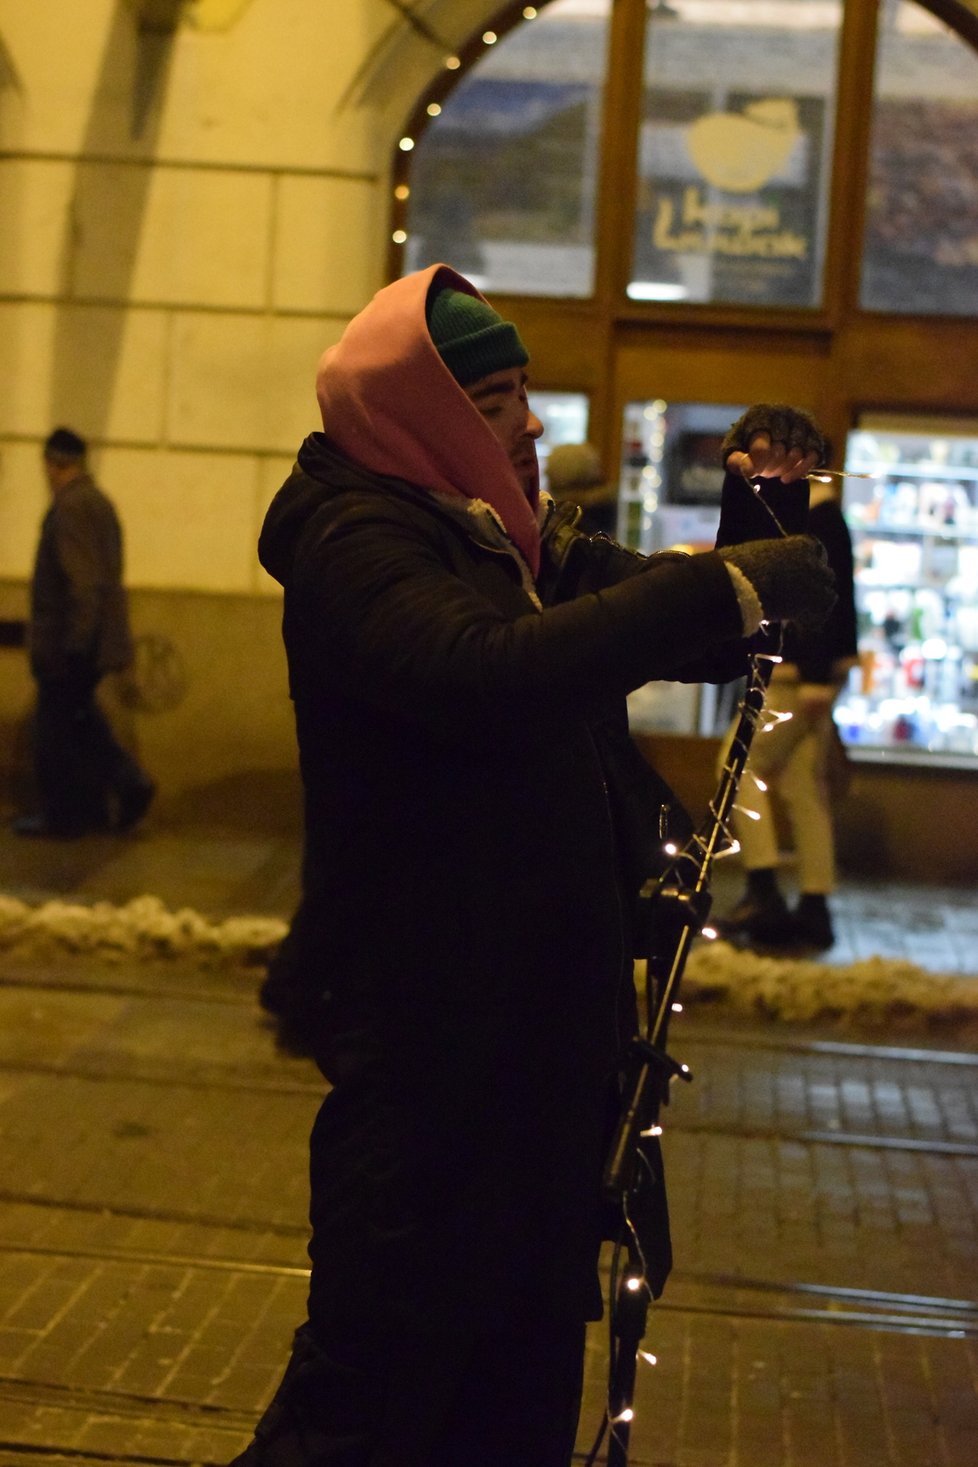 Dokumentarista Tadeáš Daněk natočil pro ČT dokumentární sérii Pickupeři o skupině mužů, kteří na ulici oslovují ženy.